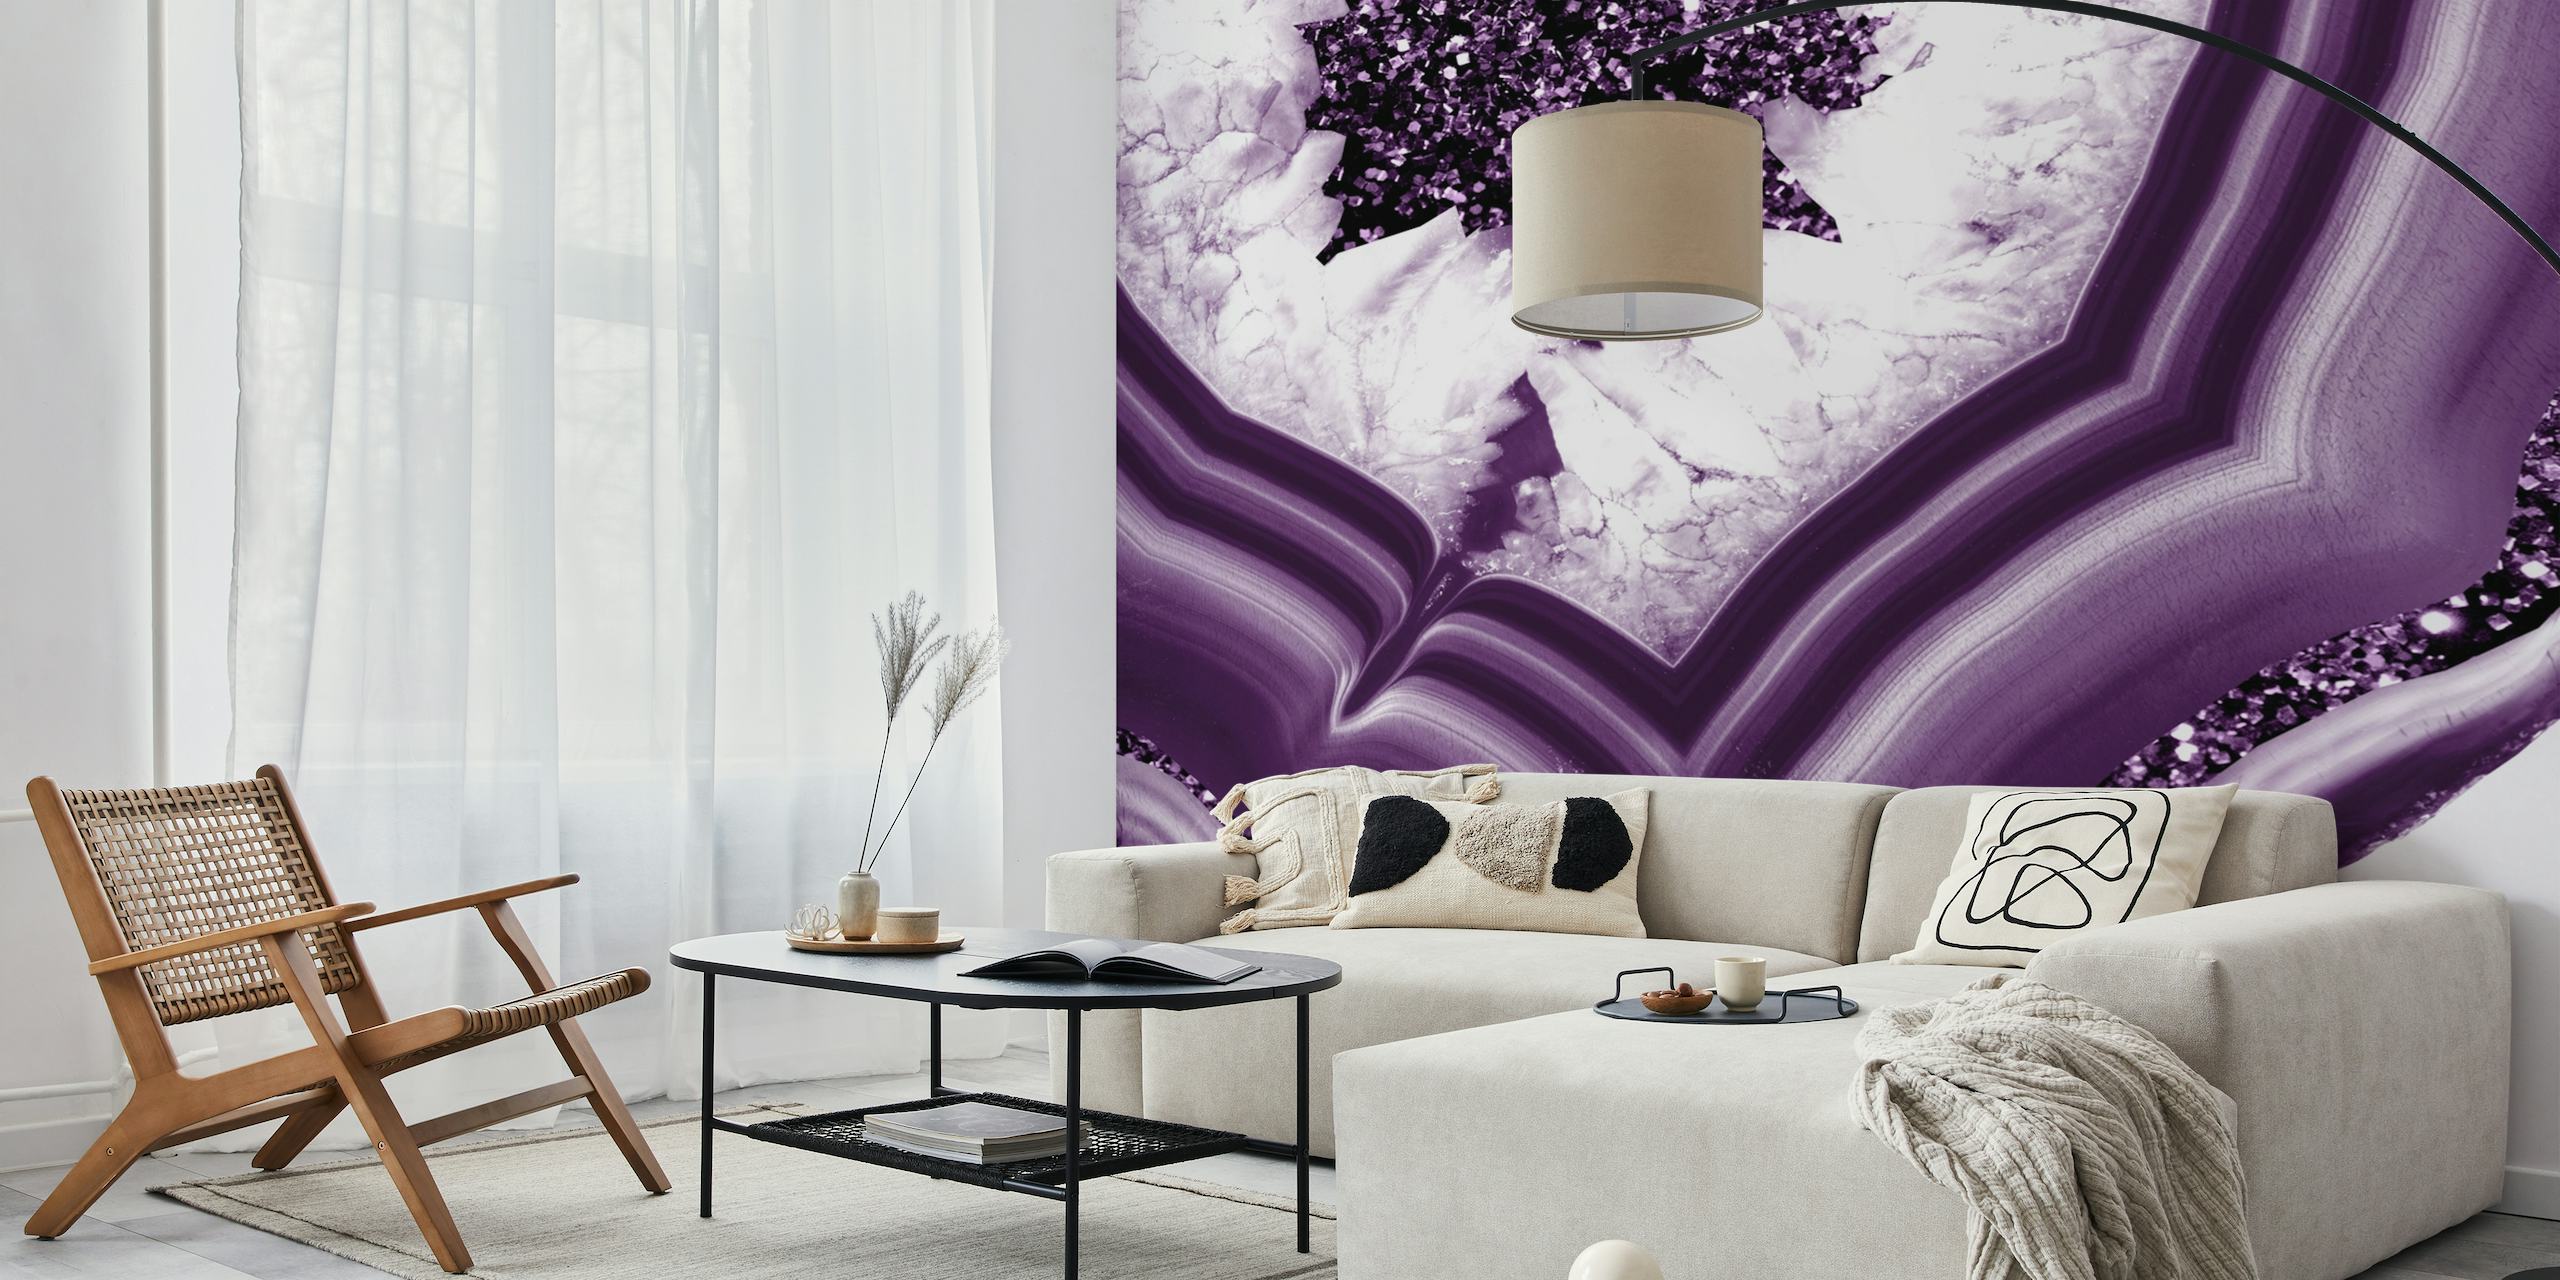 Elegante decorazione murale con motivo in agata viola e accenti scintillanti di glitter